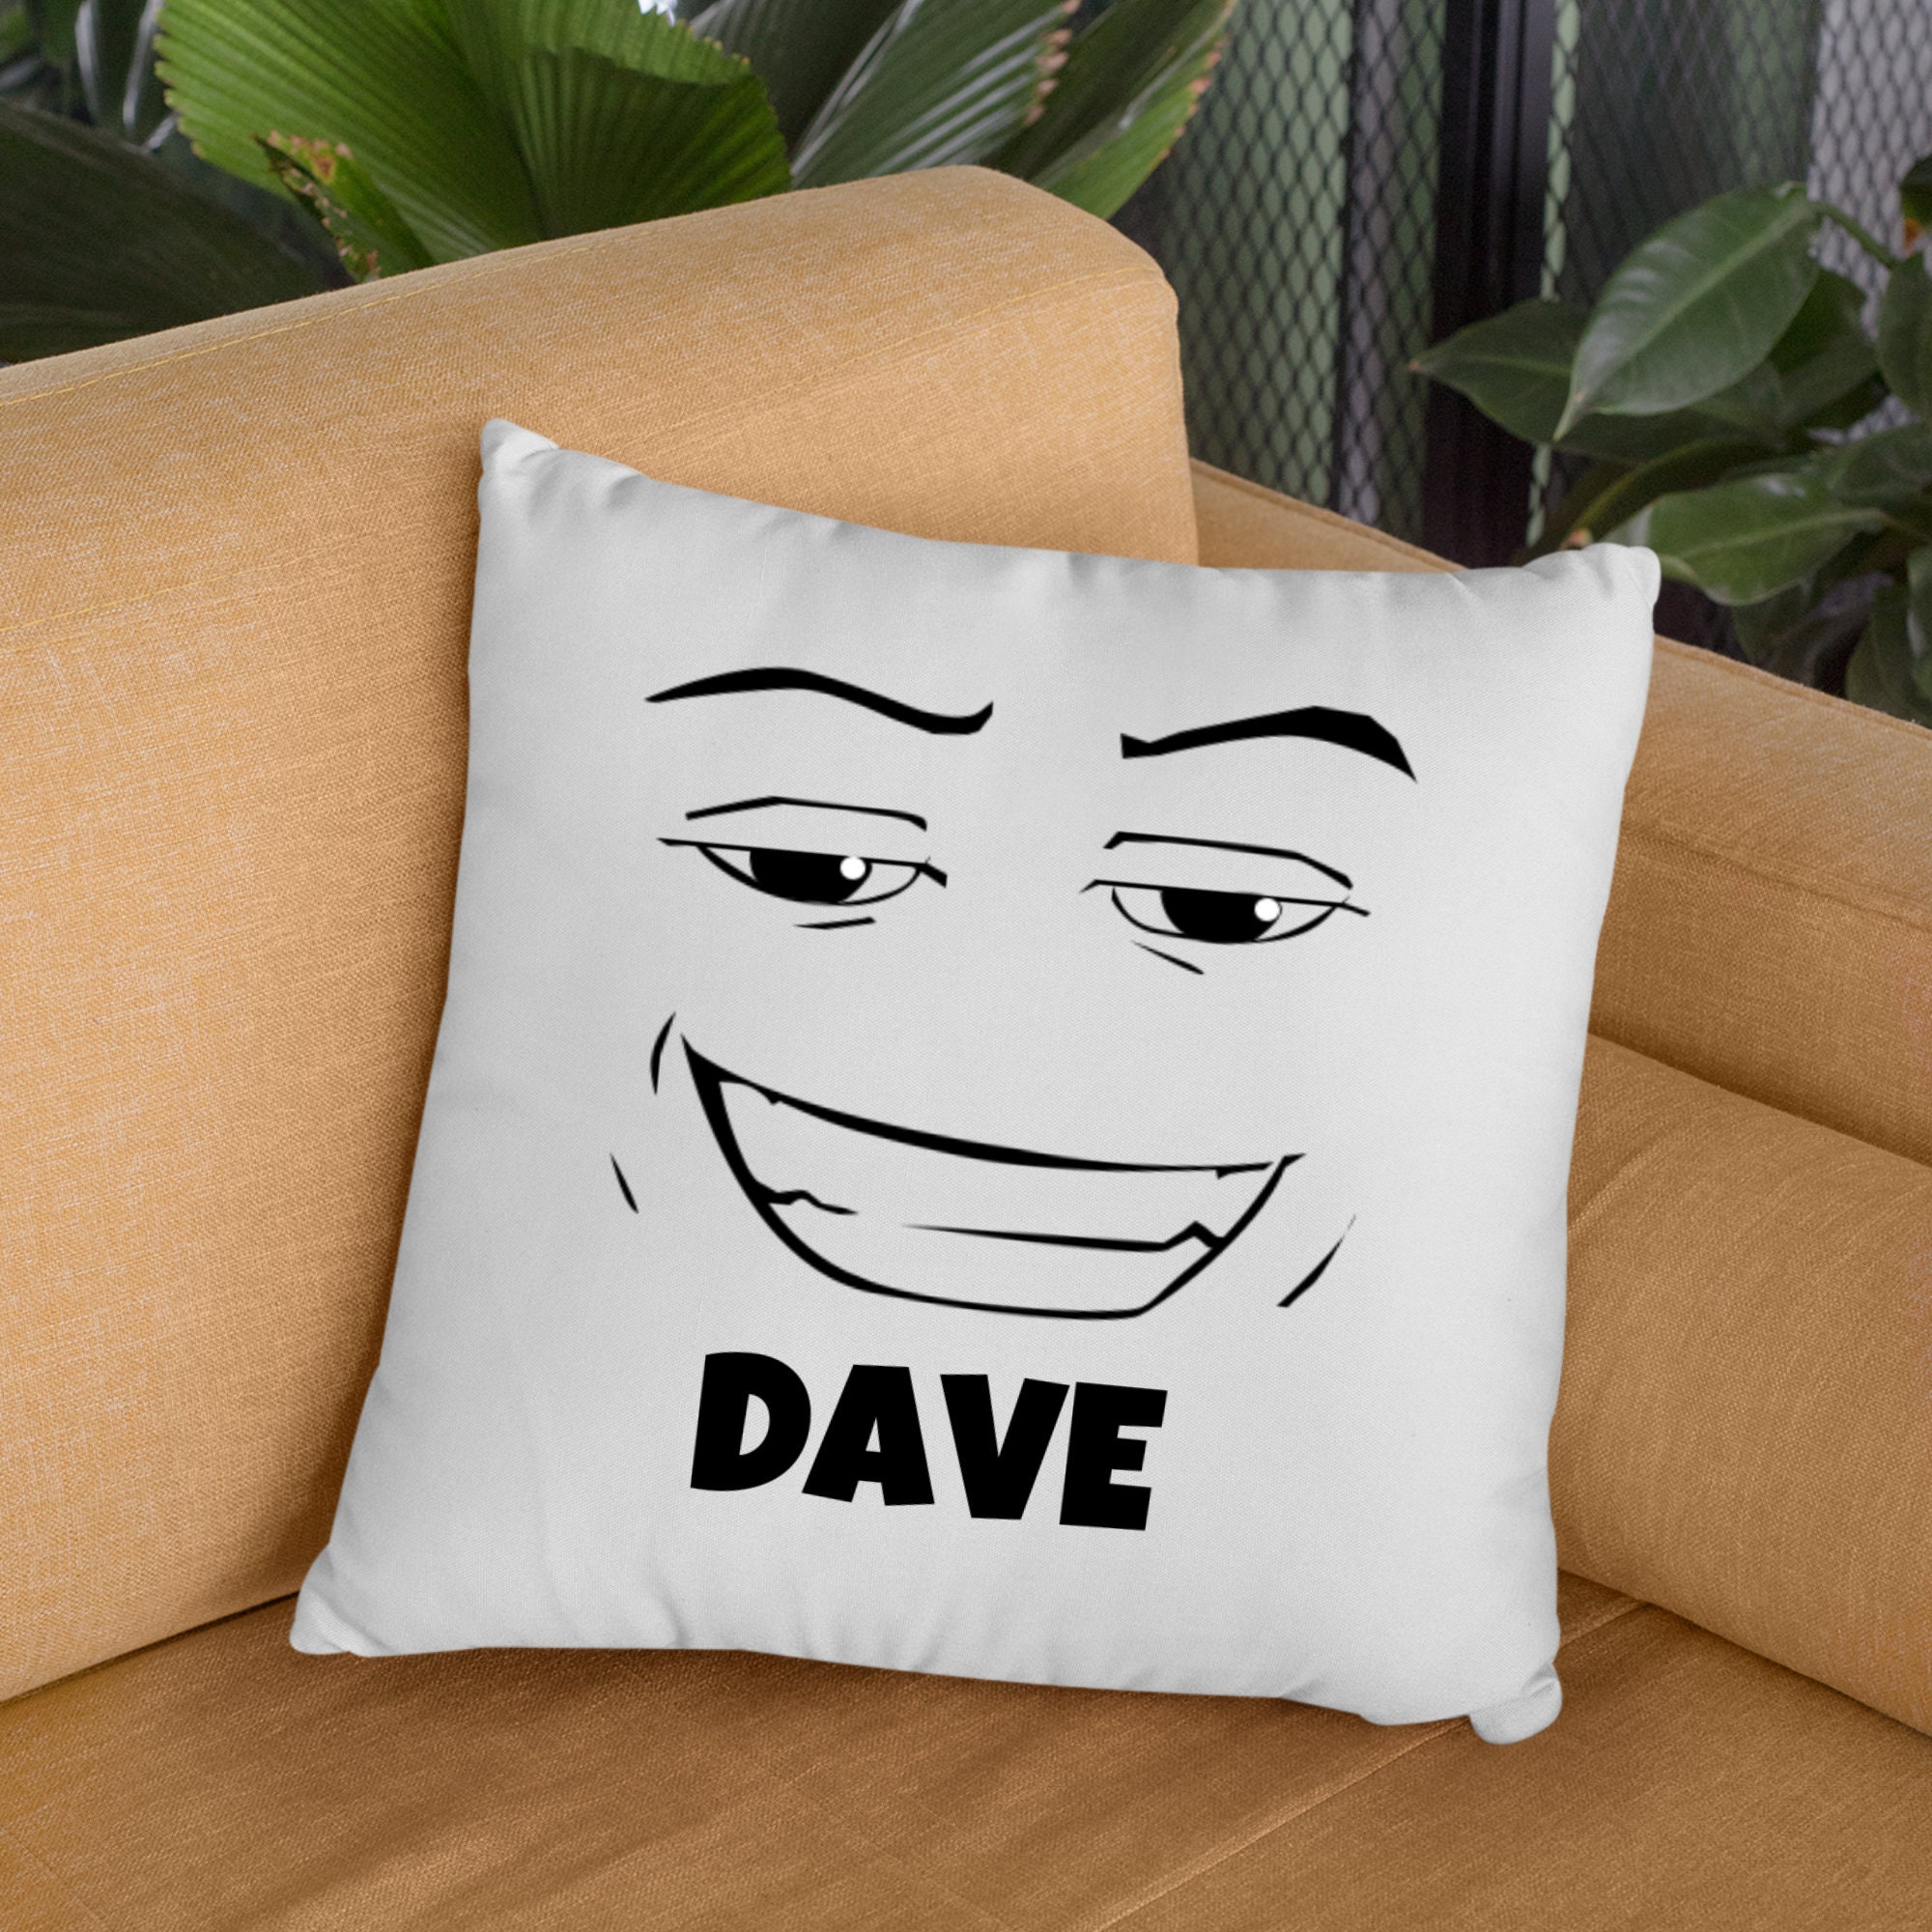 Roblox Chad Face Meme Spun Polyester Square Pillow -  Australia